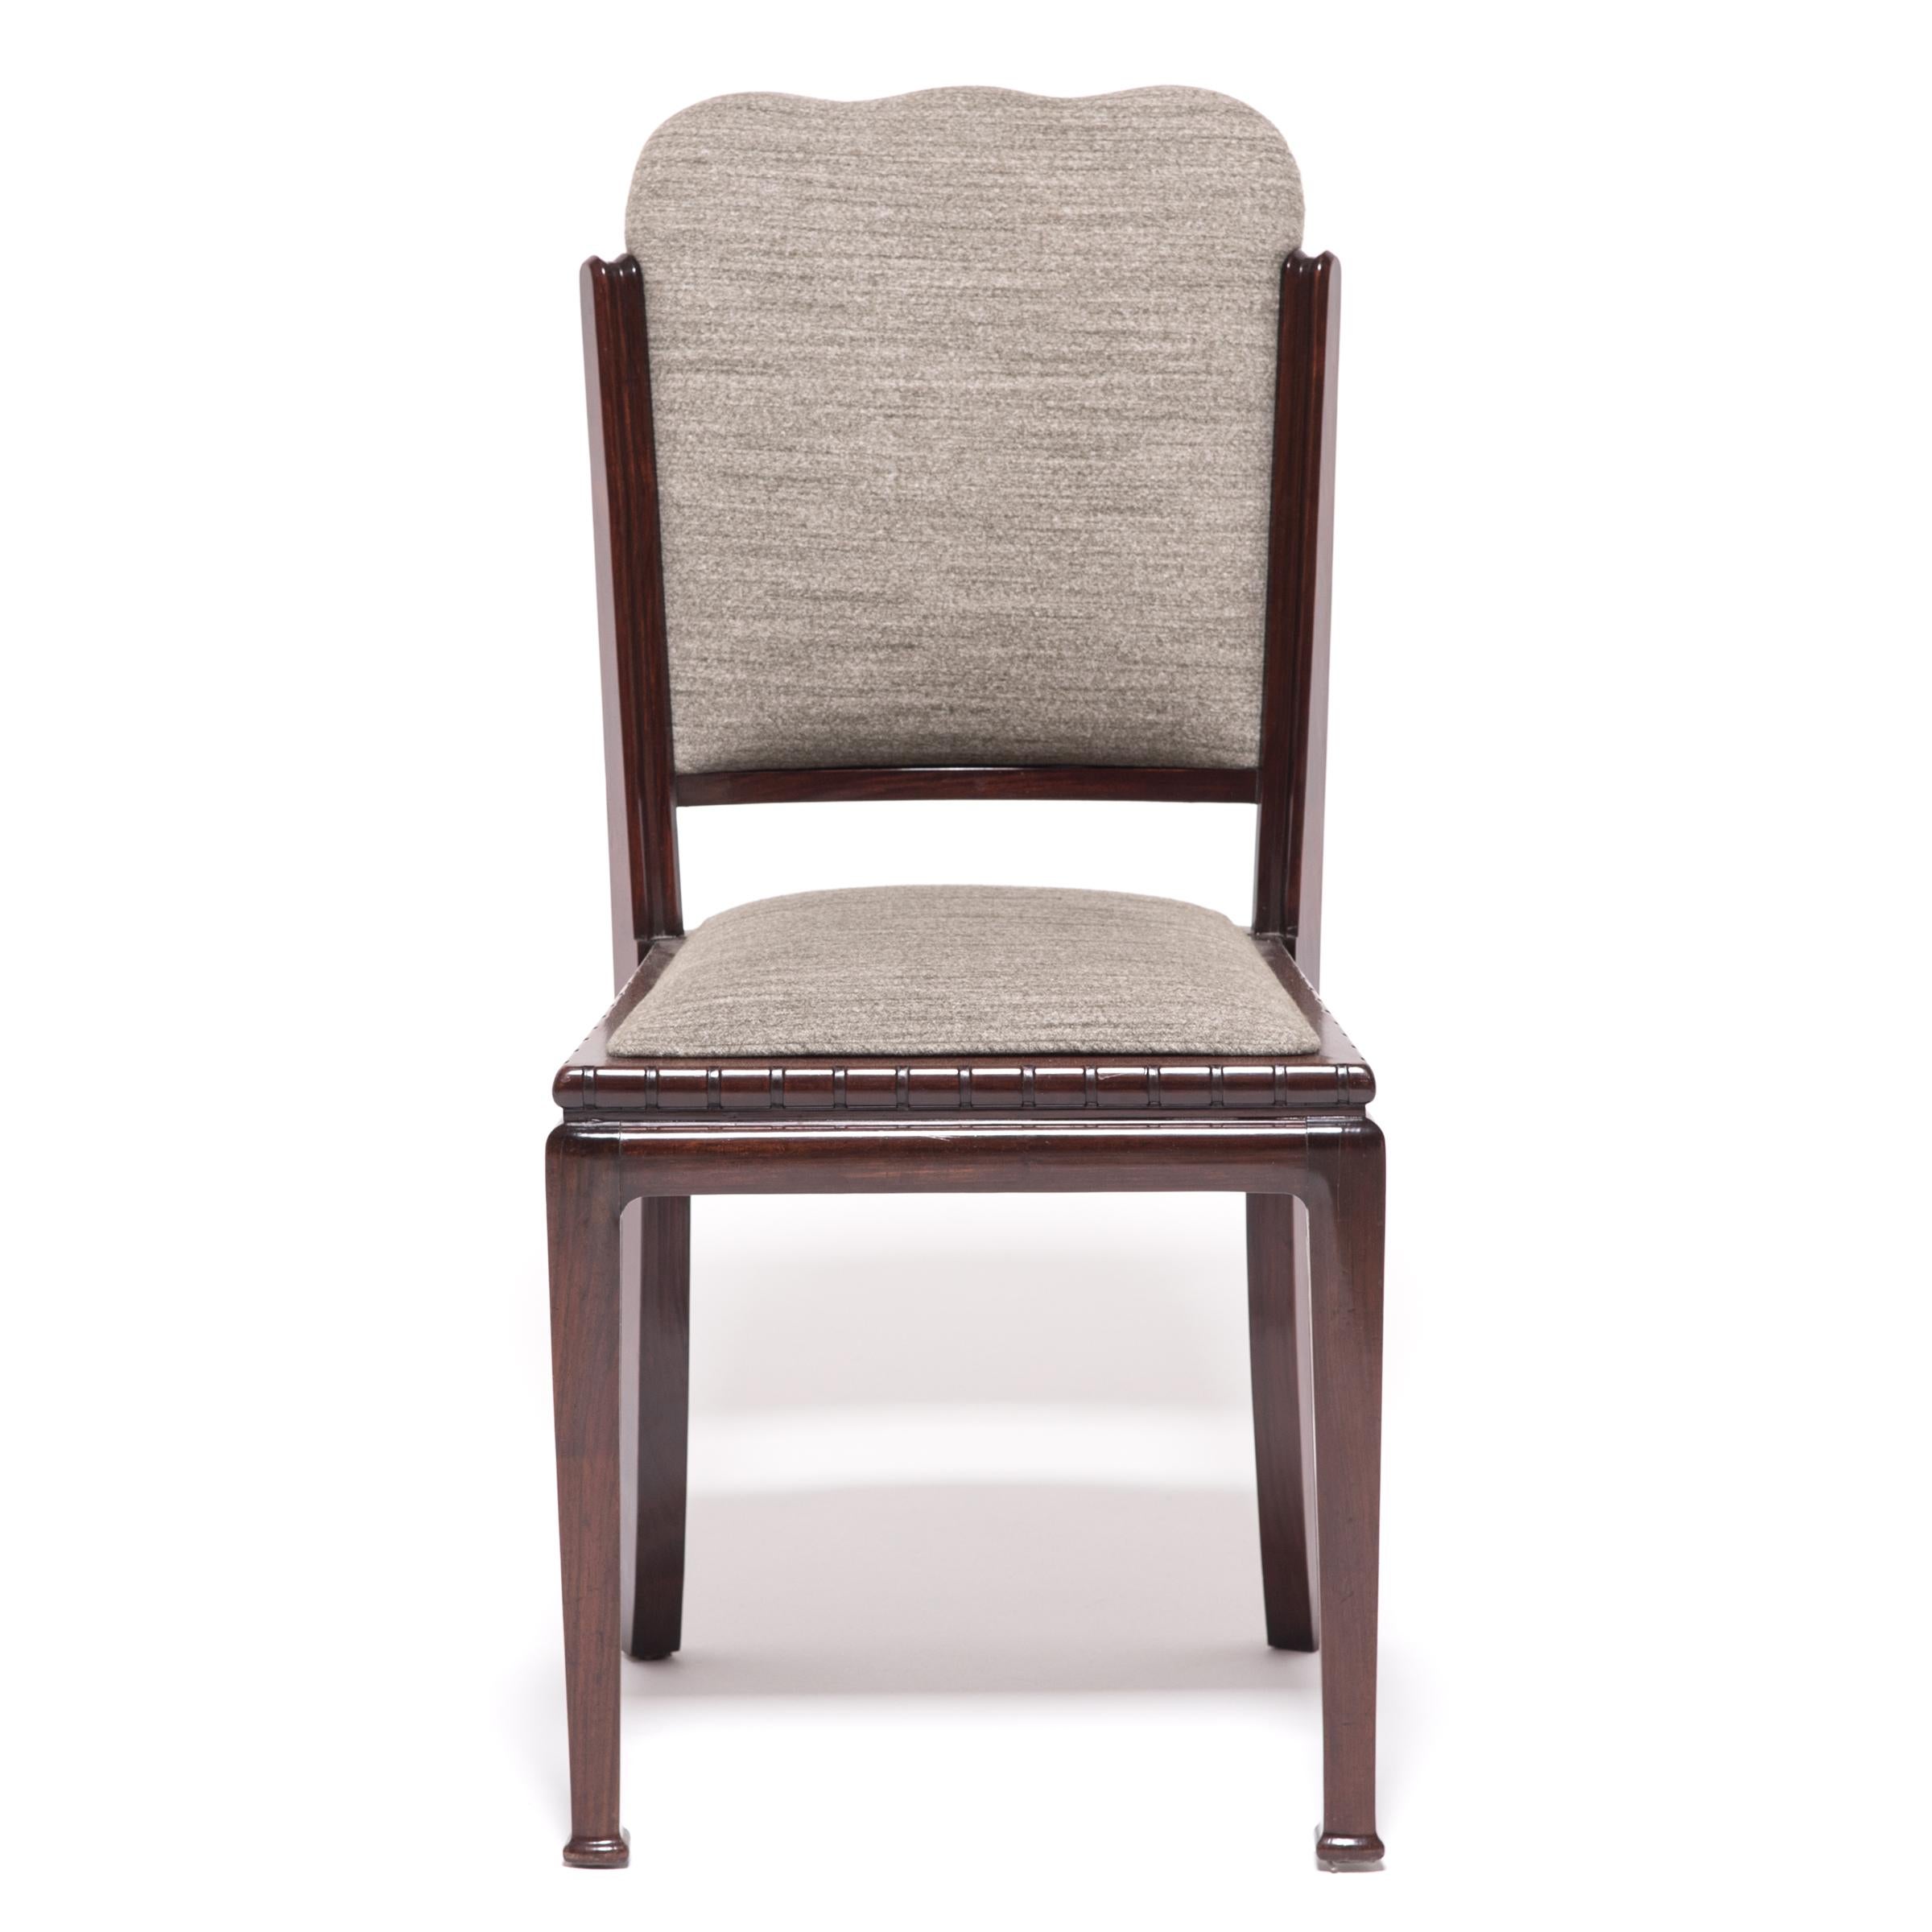 Fabriquée dans les années 1920 pour satisfaire l'engouement mondial pour tout ce qui touche à l'Art déco, cette chaise unique combine le style épuré de l'époque avec une esthétique chinoise classique. Le magnifique cadre en bois dur fait allusion à